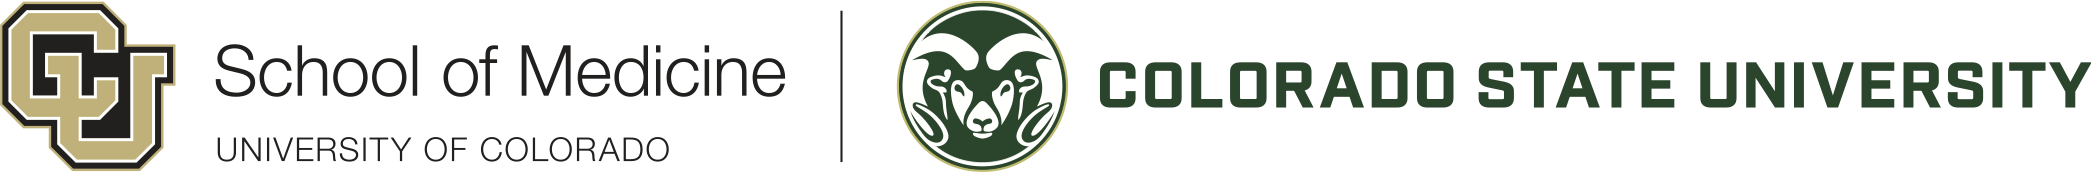 CU-SOM-CSU-Partner-Logo